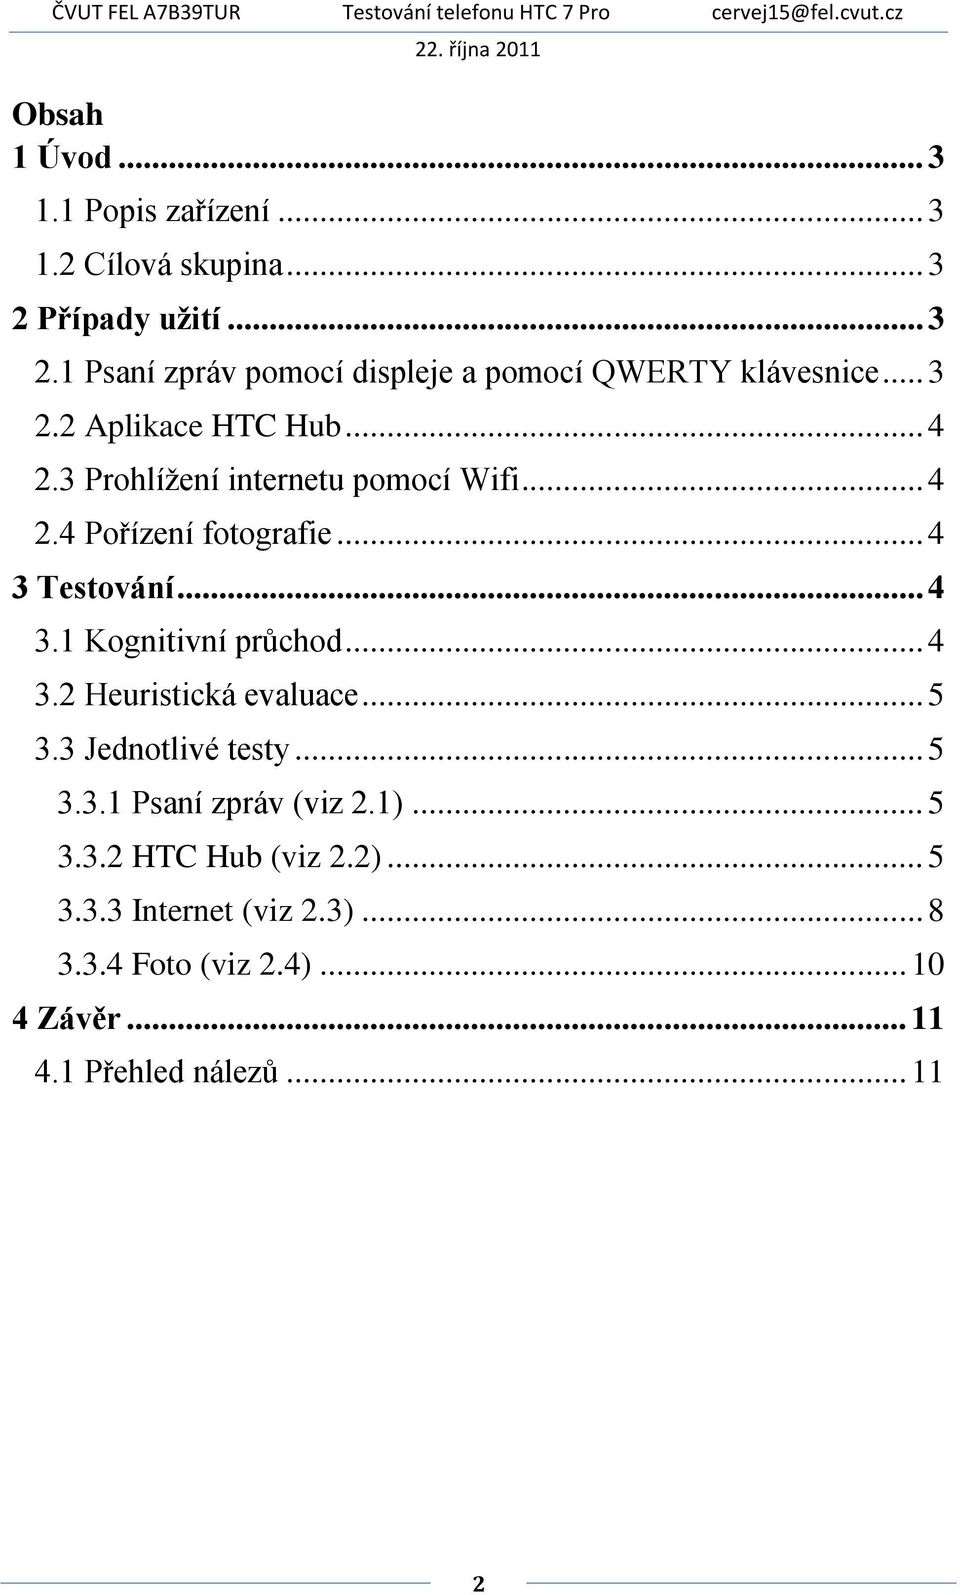 .. 4 3.2 Heuristická evaluace... 5 3.3 Jednotlivé testy... 5 3.3.1 Psaní zpráv (viz 2.1)... 5 3.3.2 HTC Hub (viz 2.2)... 5 3.3.3 Internet (viz 2.